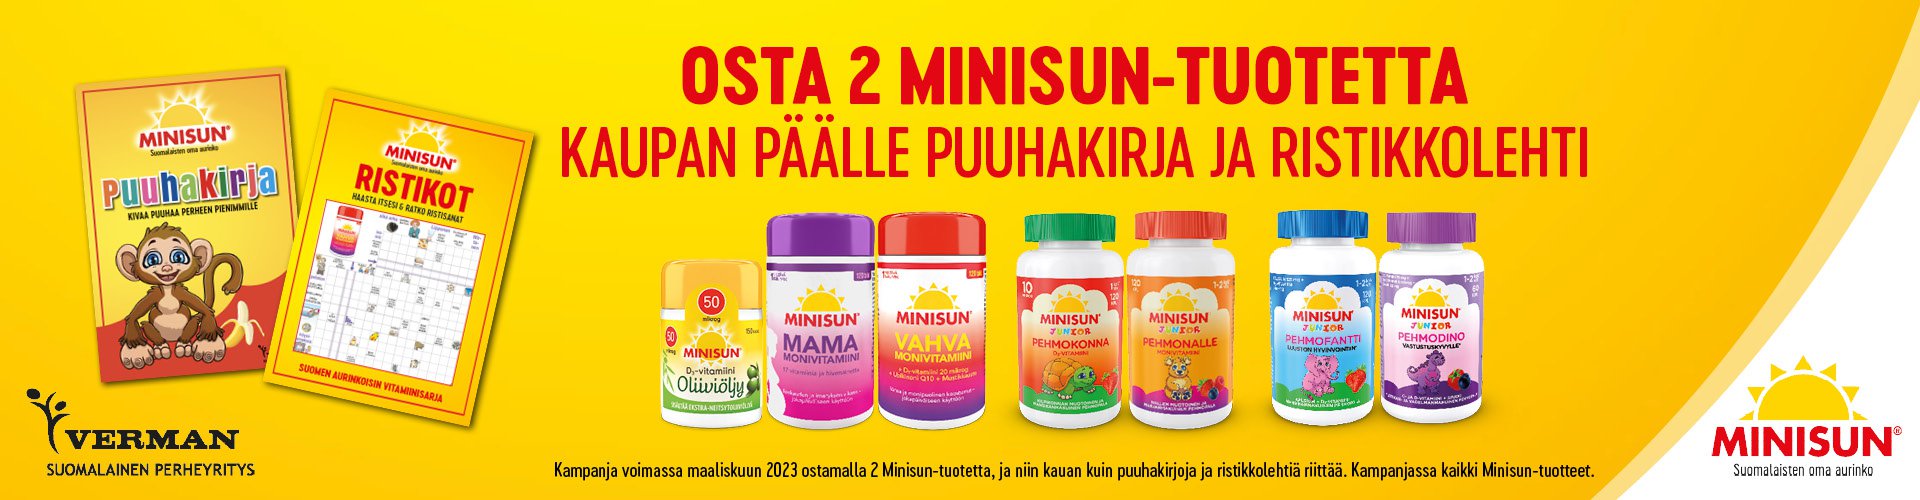 Minisun on Suomessa kehitetty vitamiinisarja, johon kuuluu D-vitamiinit, monivitamiinit, Luusto-tuotteet sekä päivittäistä vastustuskykyä ylläpitävät tuotteet. Minisun-vitamiinit sopii koko perheen päivittäiseen käyttöön.